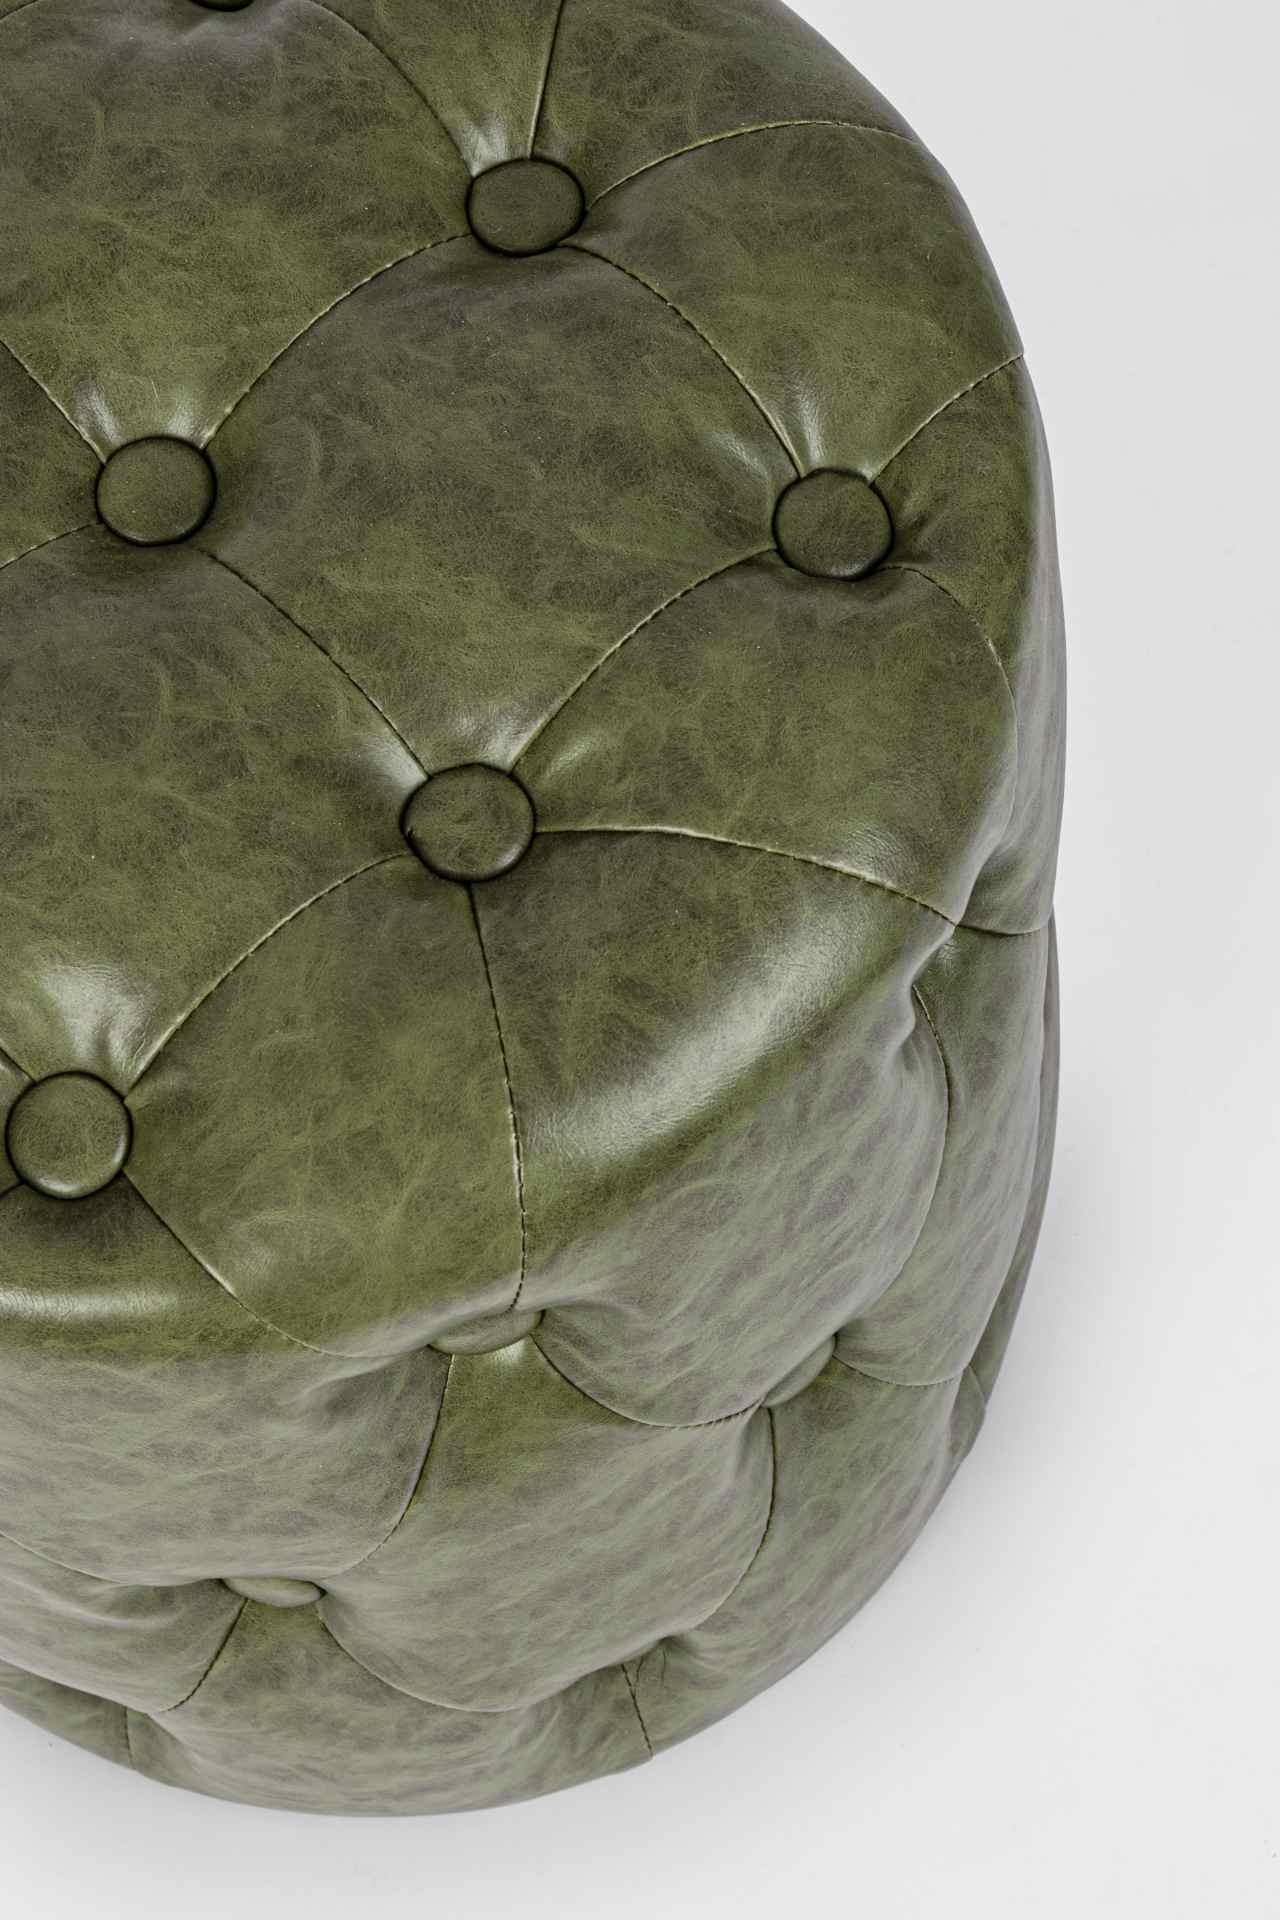 Der Pouf Batilda überzeugt mit seinem klassischen Design. Gefertigt wurde er aus Kunstleder in Chesterfiel-Optik, welches einen grünen Farbton besitzt. Das Gestell ist aus Kiefernholz. Der Durchmesser beträgt 34 cm.